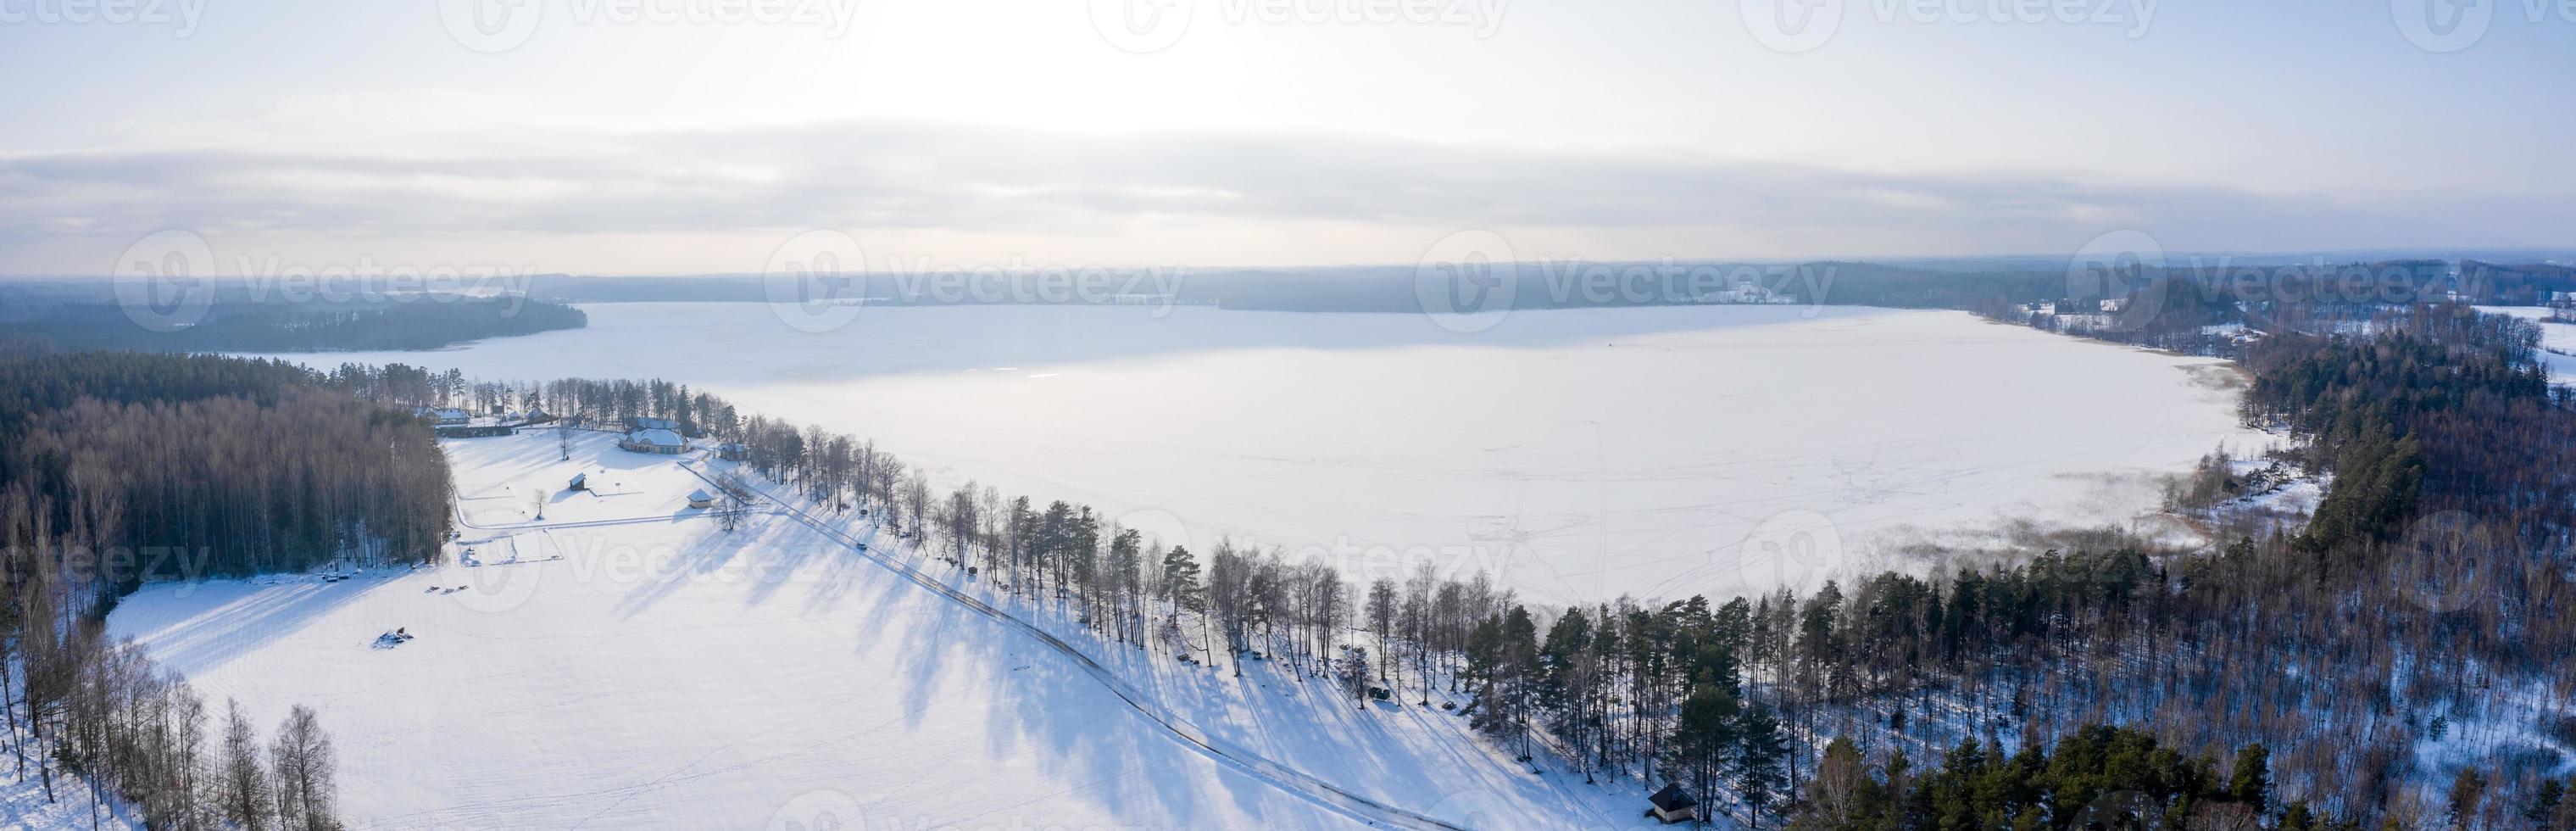 vue aérienne du paysage hivernal, panorama sur le lac gelé au milieu d'une forêt. des merveilles d'hiver. photo